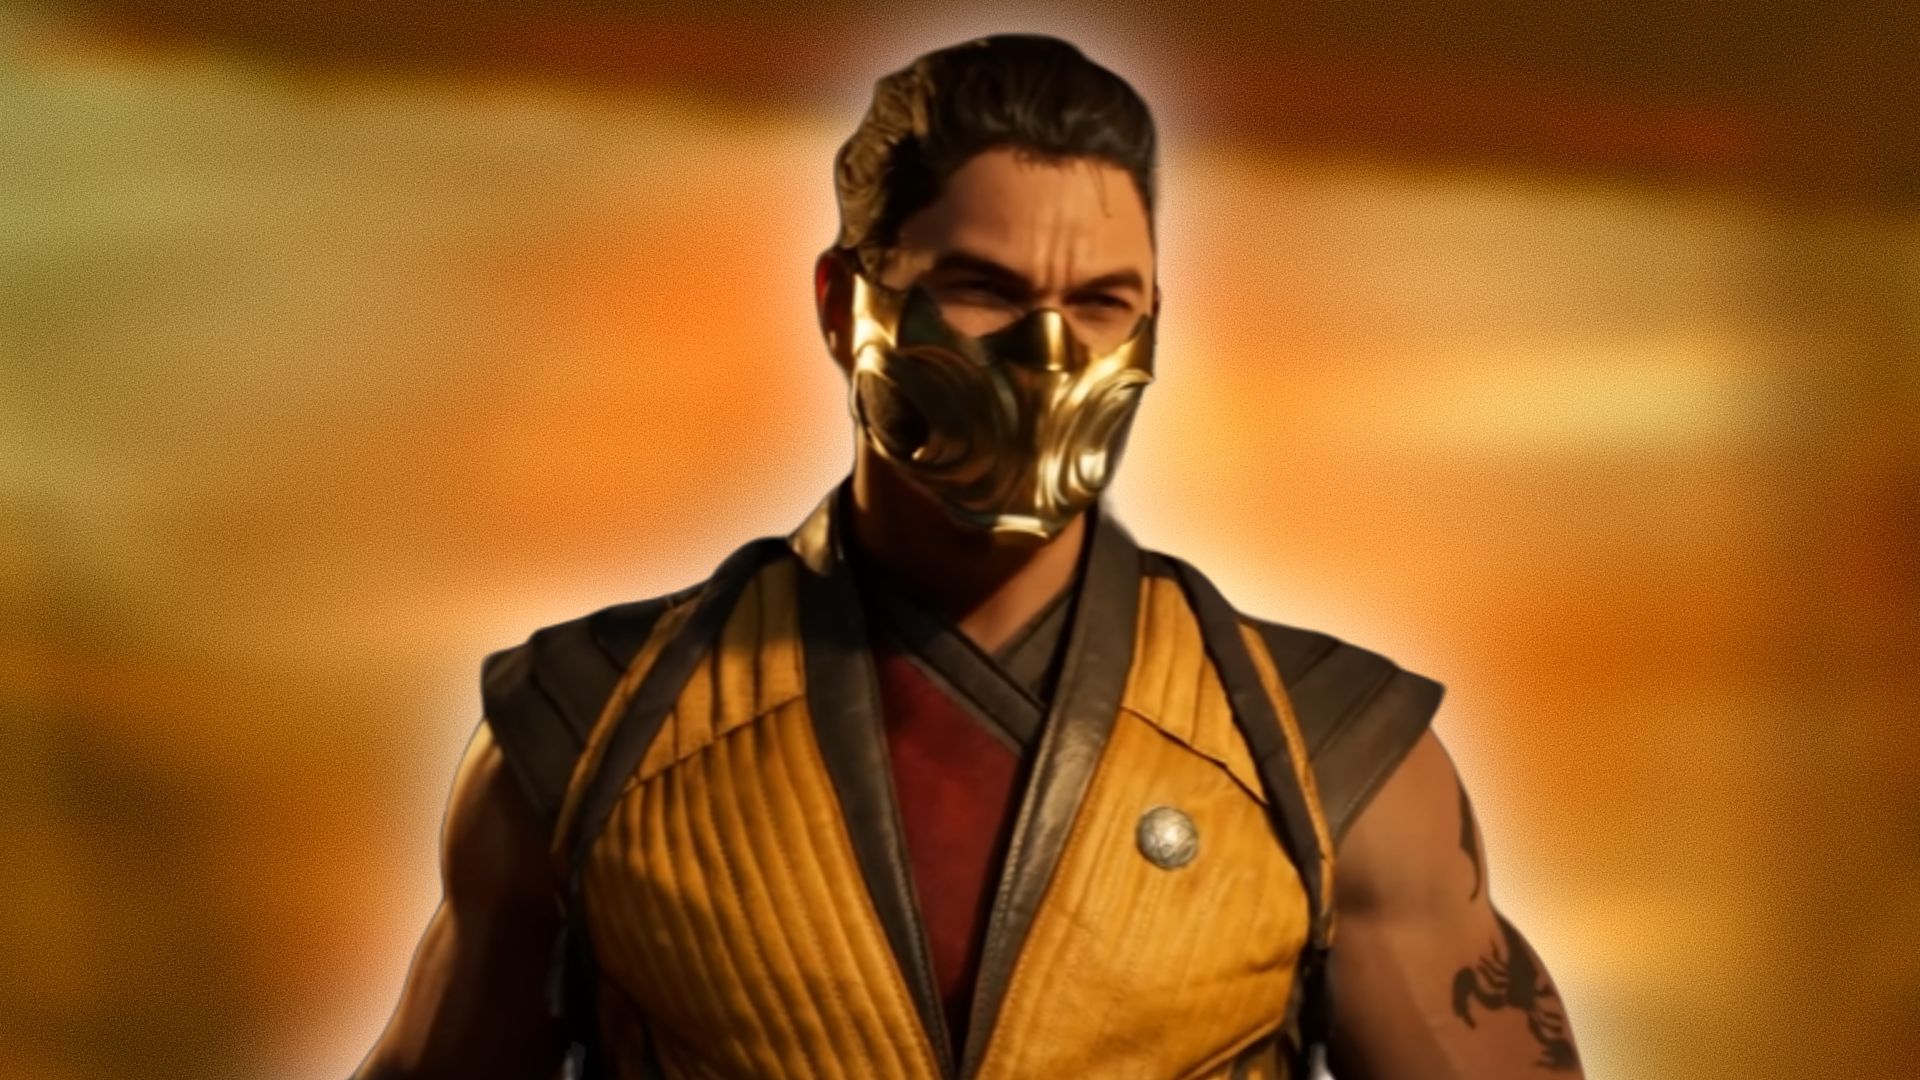 Mortal Kombat 1 Kombat Pack 1: Release date, price, and more